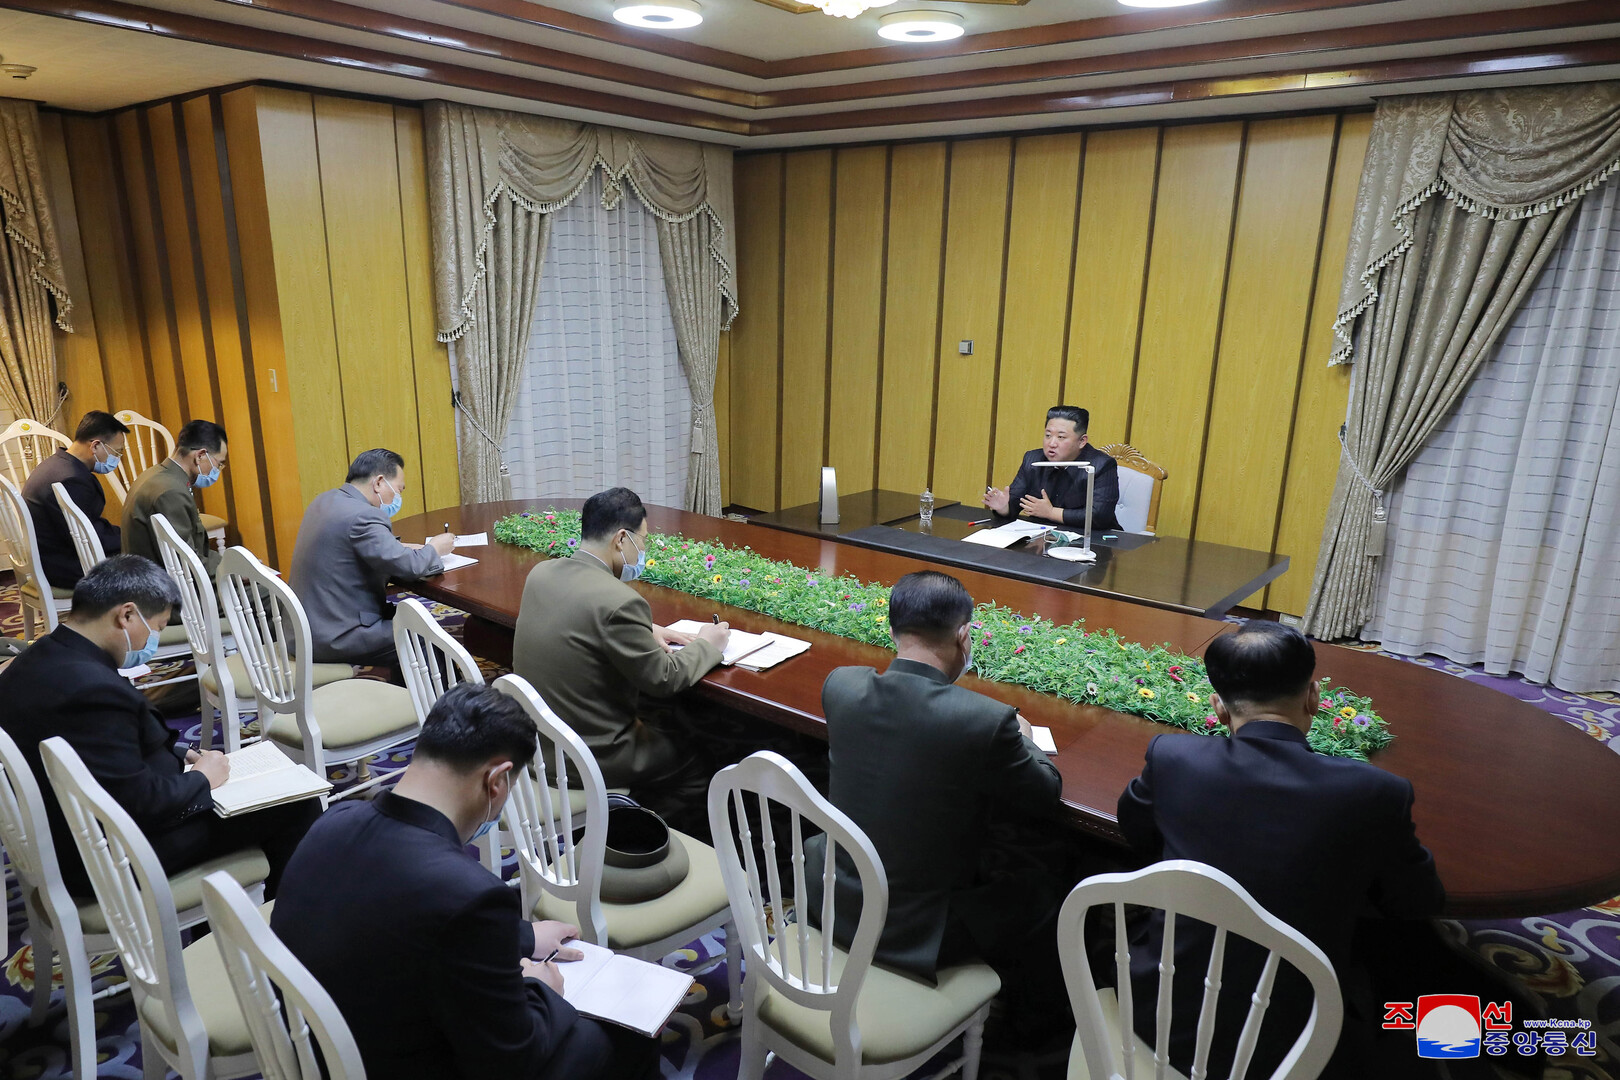 زعيم كوريا الشمالية: نواجه اضطرابا كبيرا بسبب انتشار كورونا